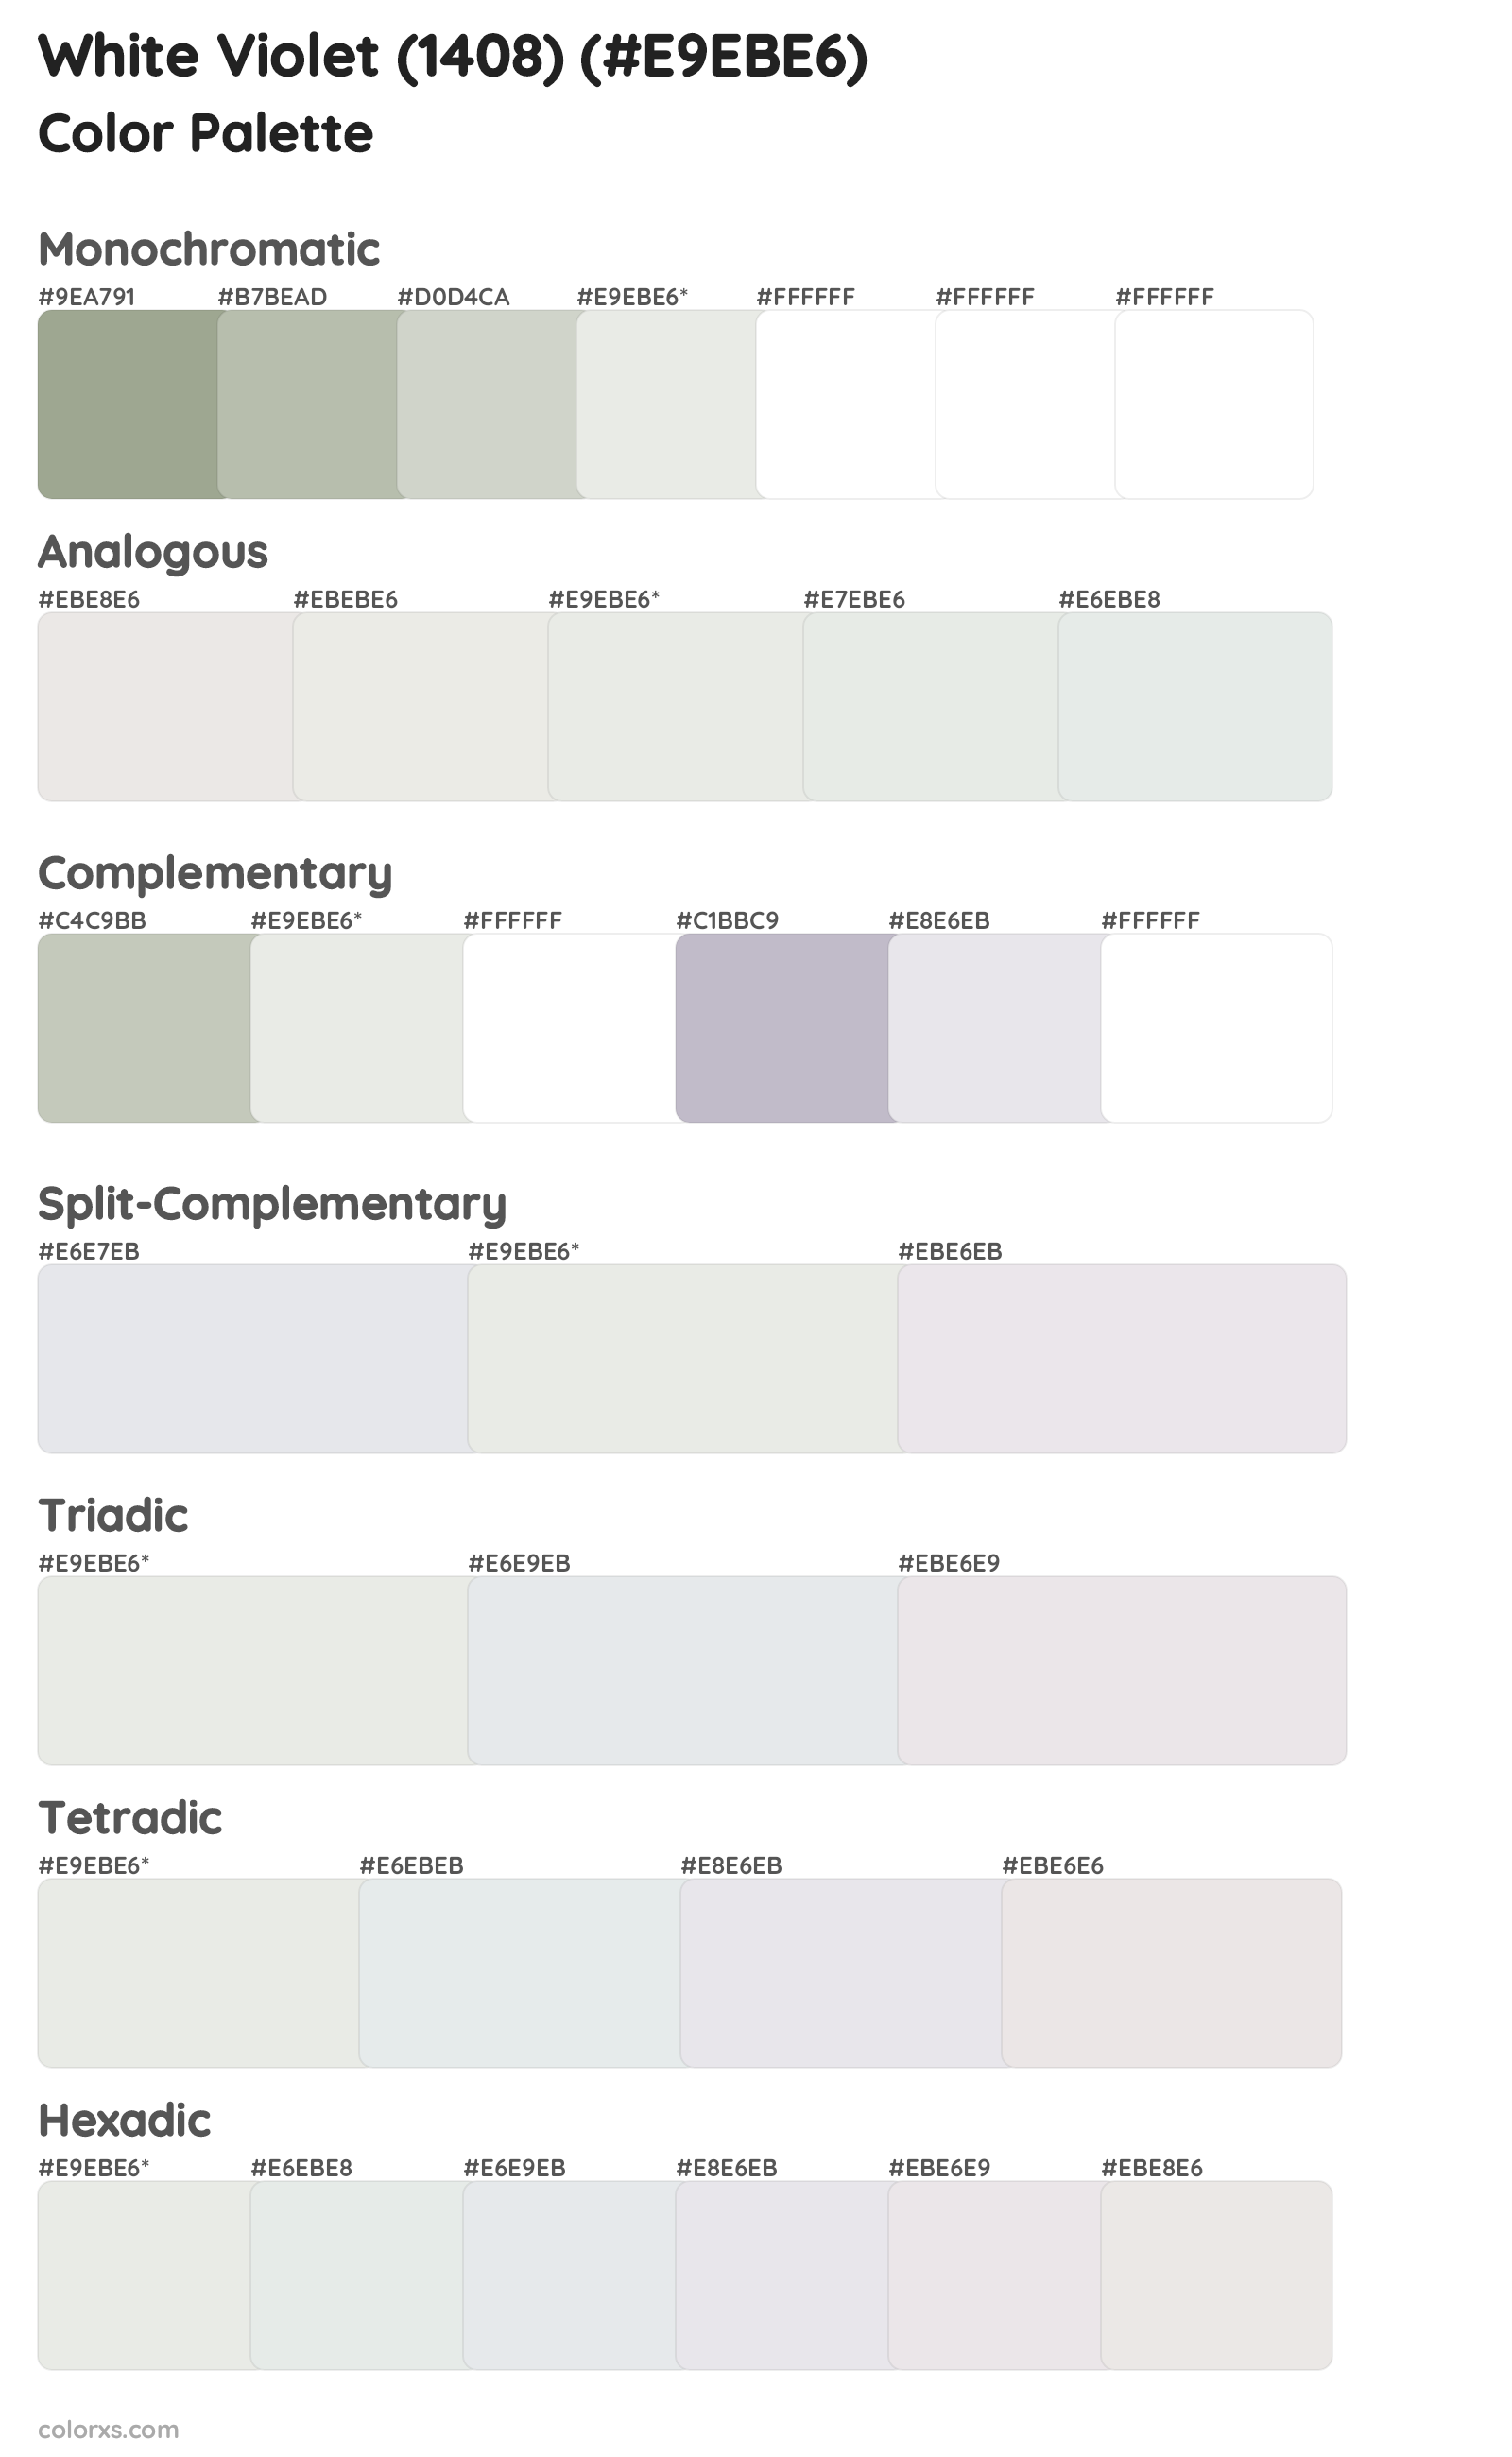 White Violet (1408) Color Scheme Palettes